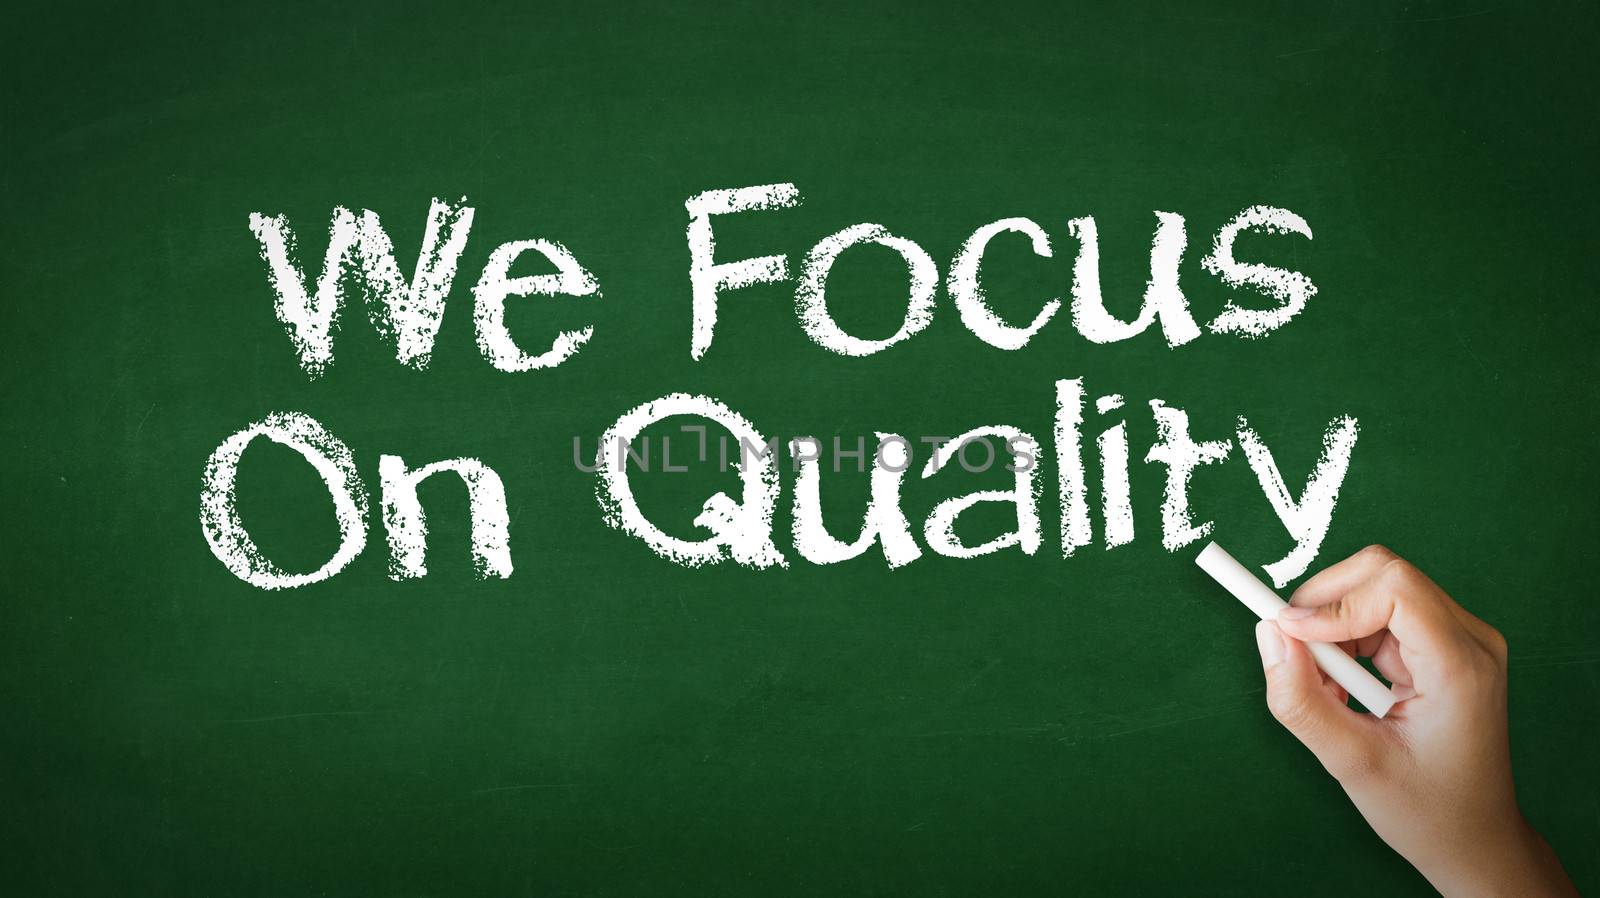 We Focus On Quality by kbuntu